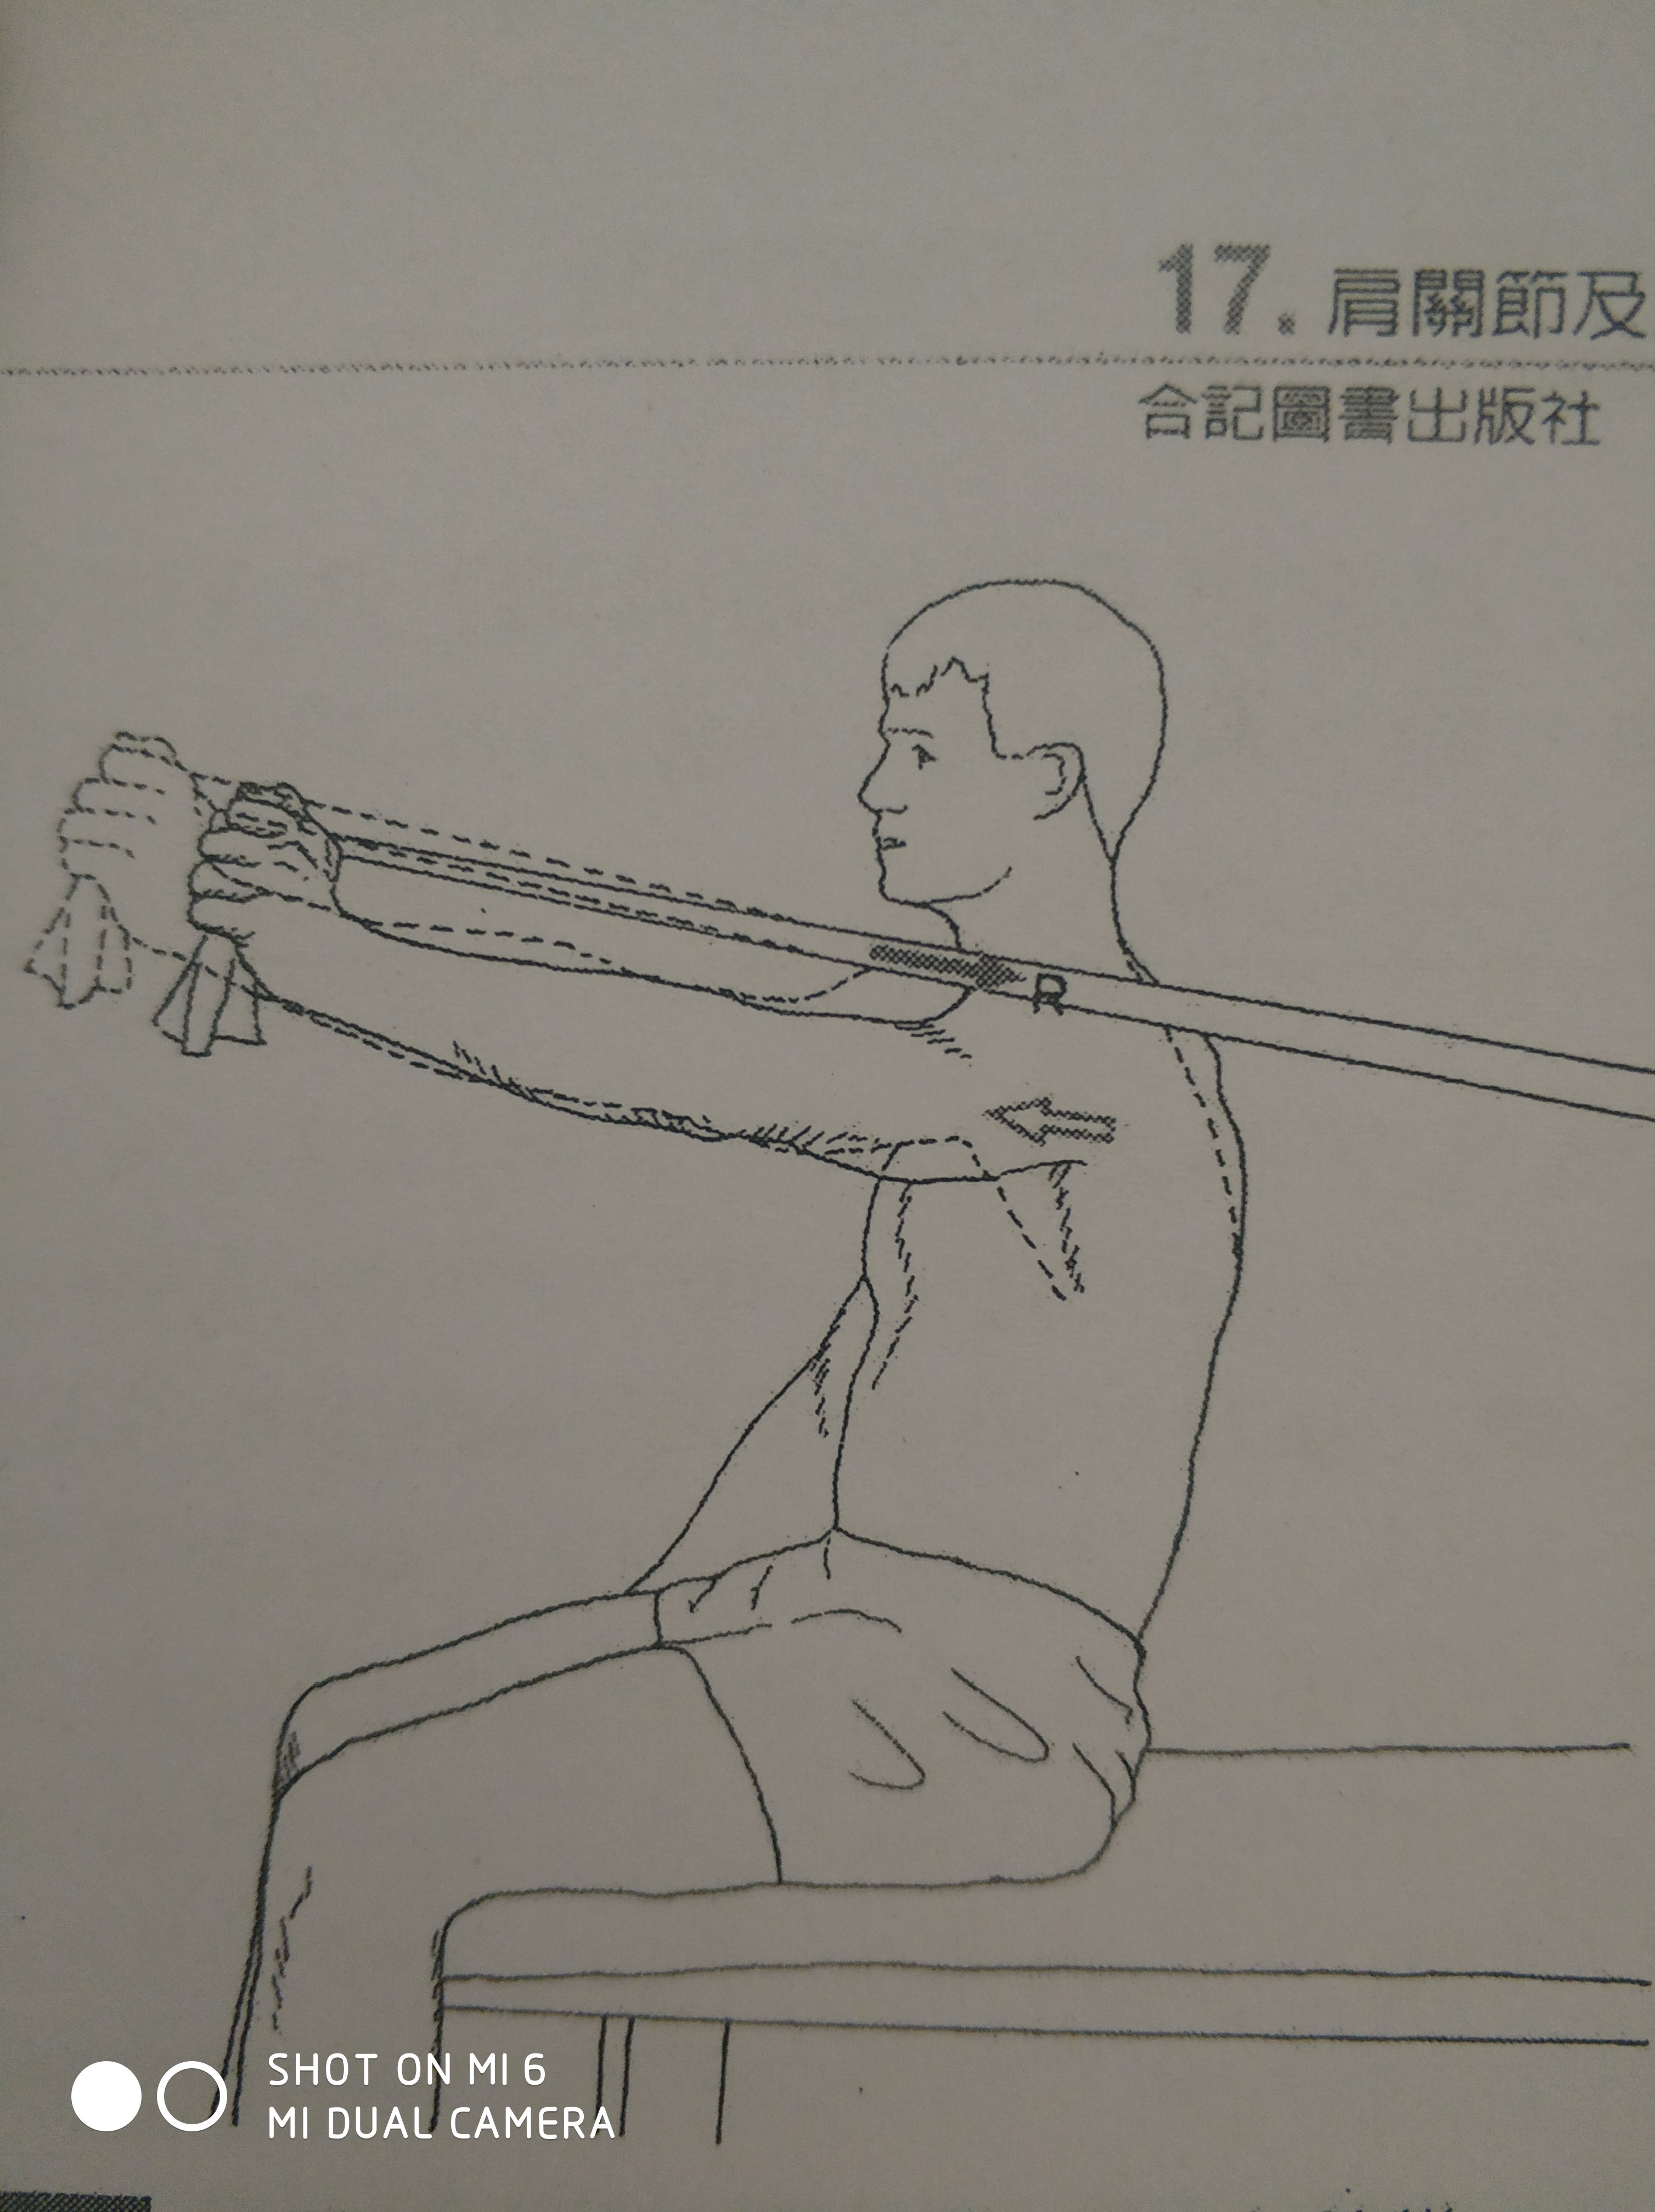 肩前束训练动作图片